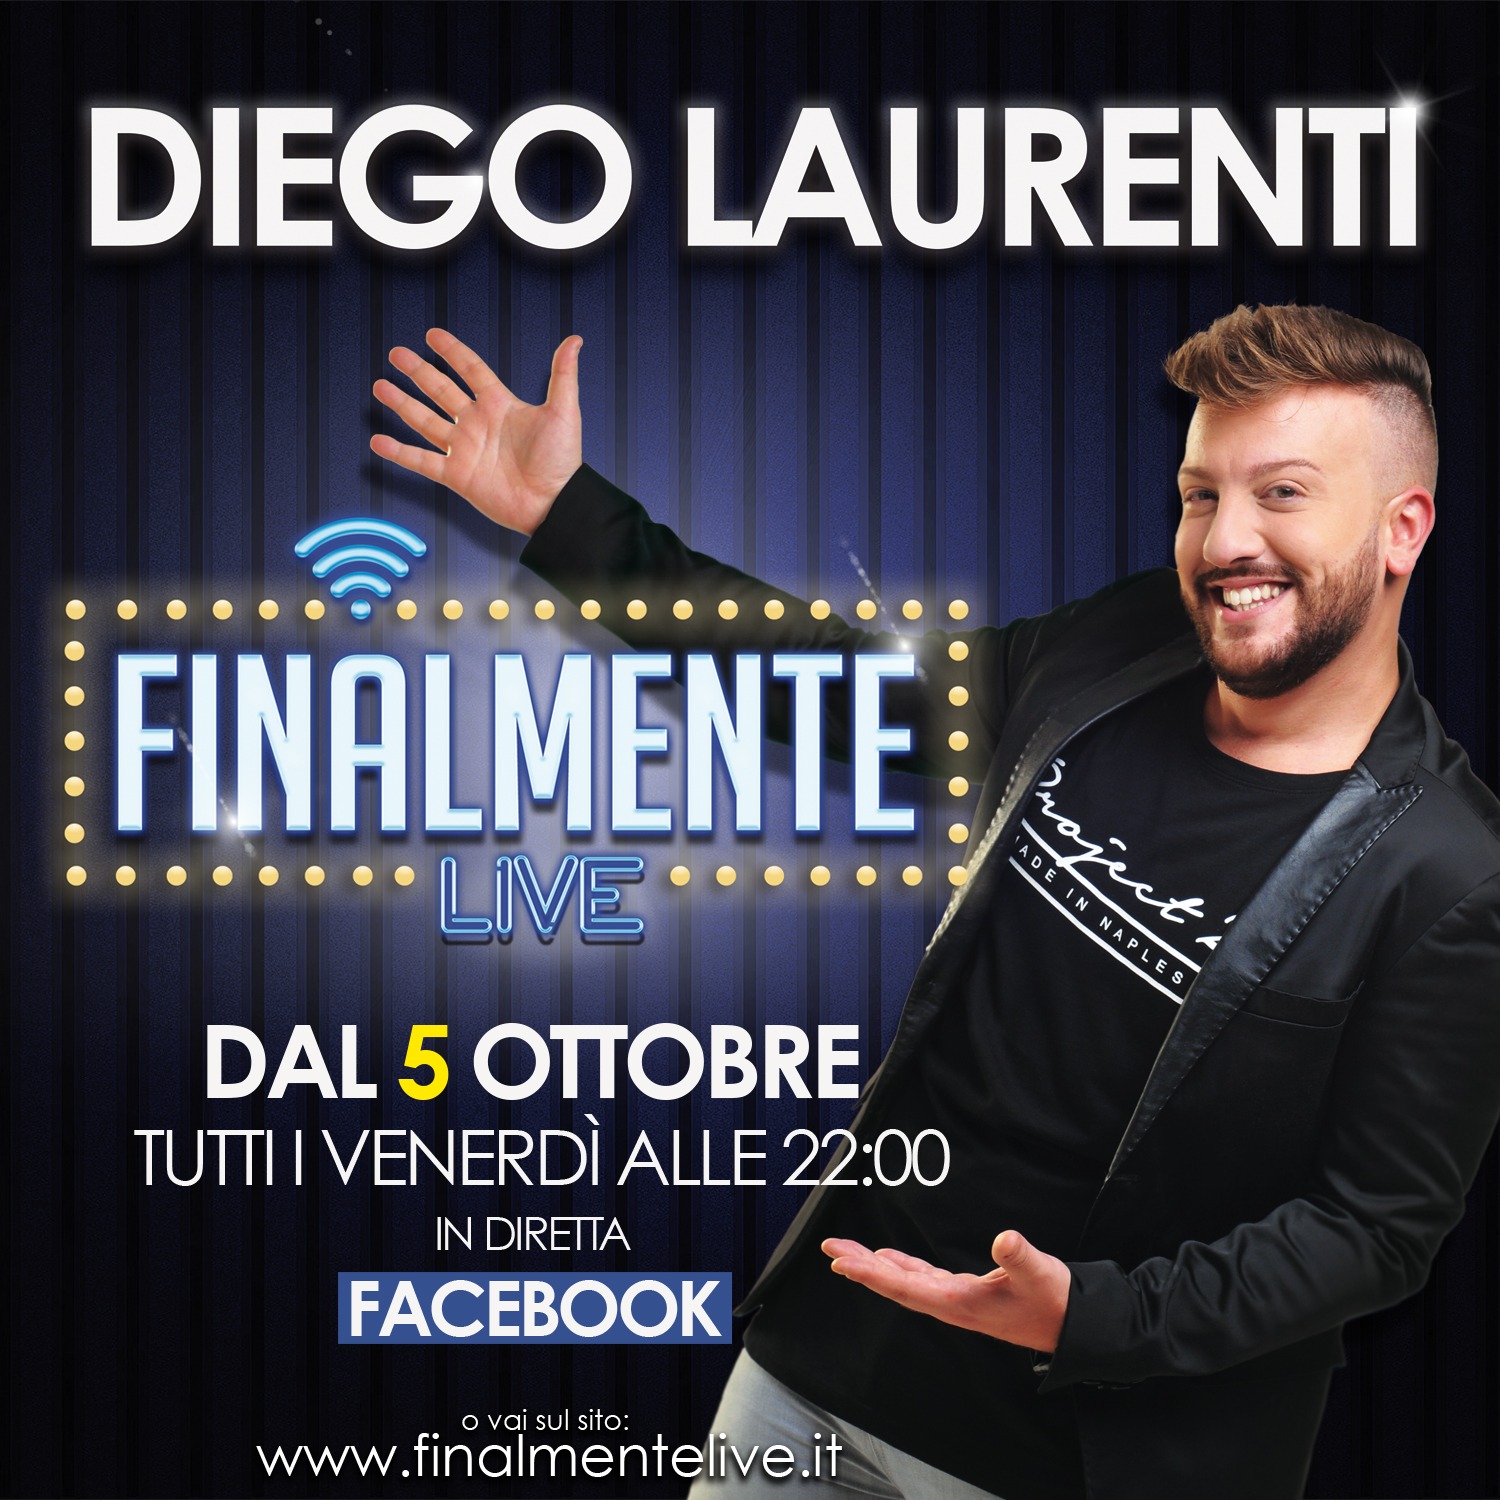 “Finalmente Live!”, il primo web-talk show italiano presentato da Diego Laurenti.